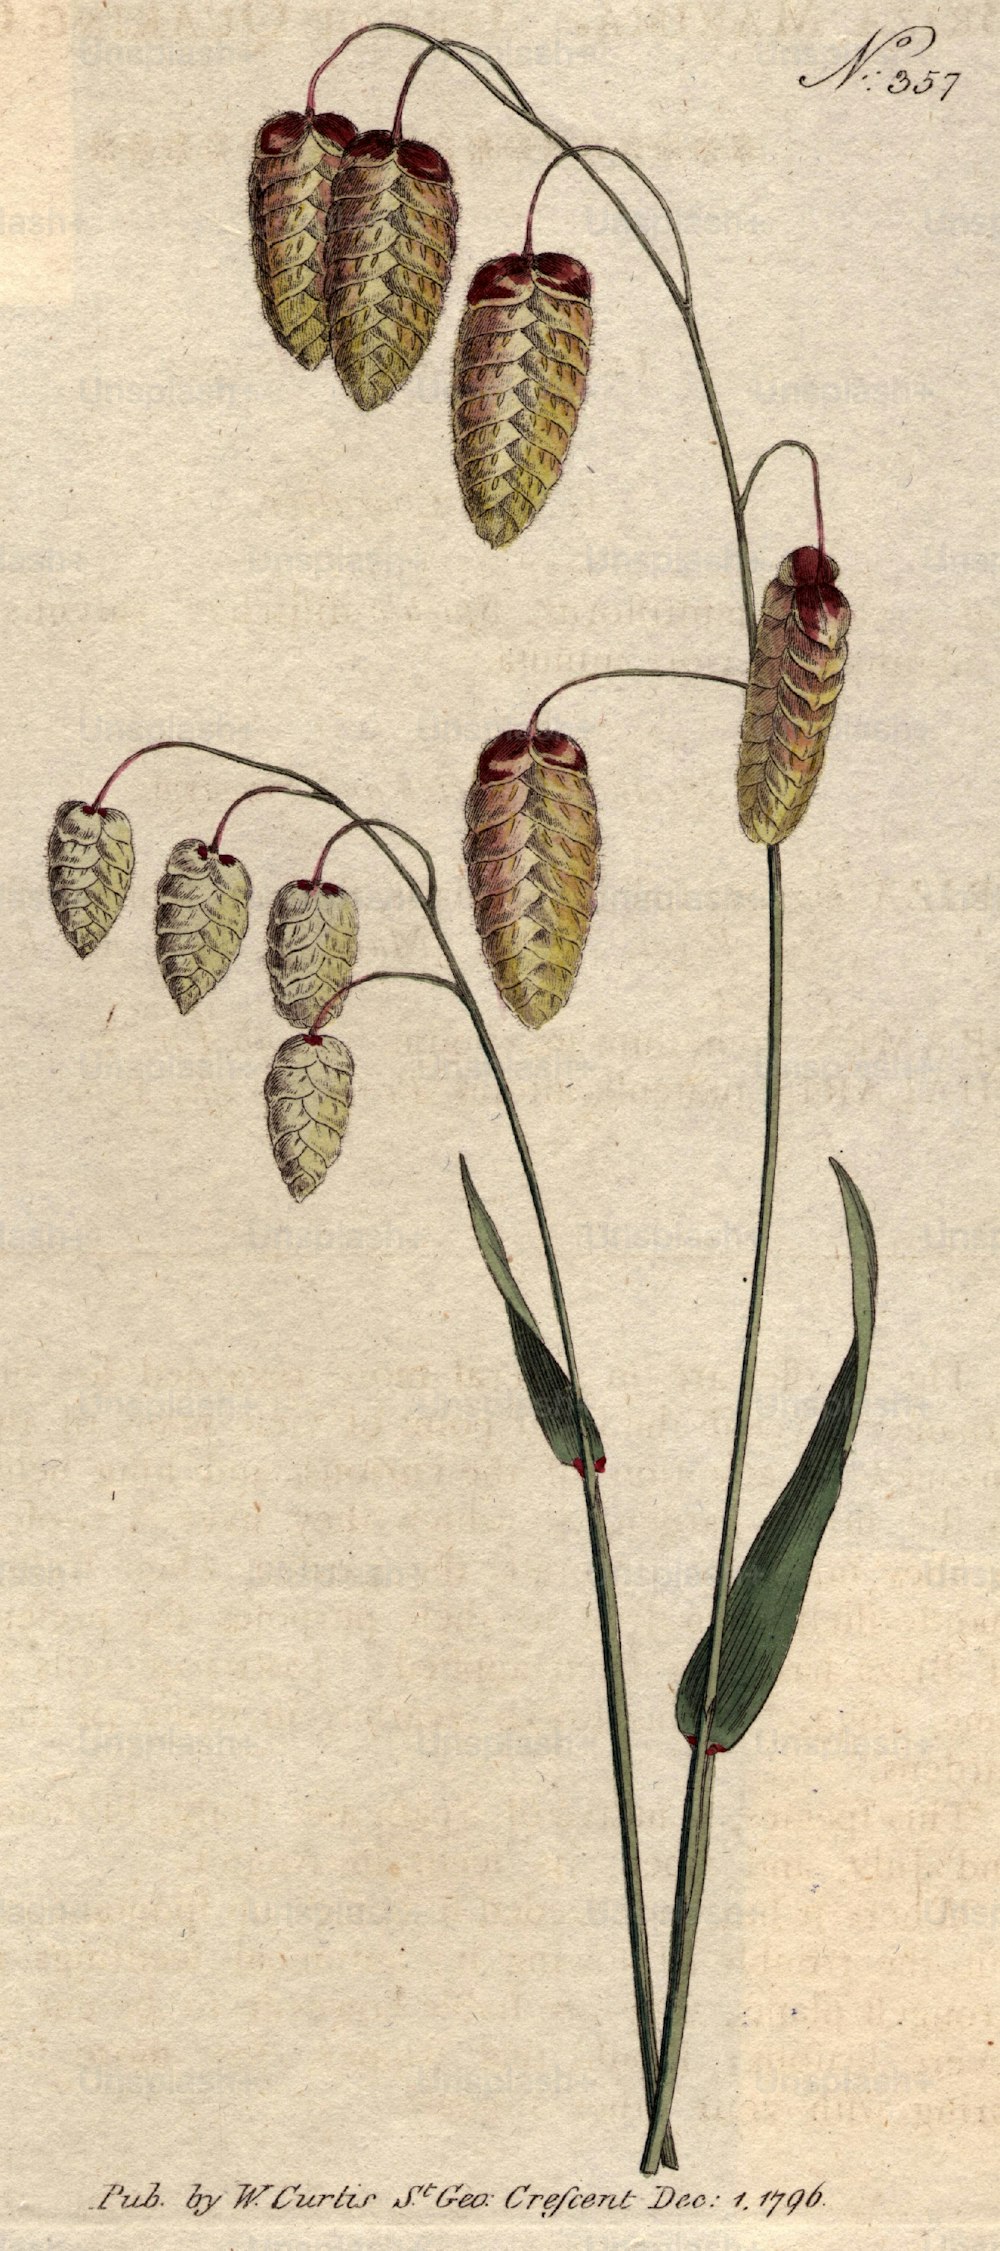 1796: Gras mit Samen.  Curtis' Botanical Magazine - veröffentlicht 1796 (Foto von Hulton Archive / Getty Images)